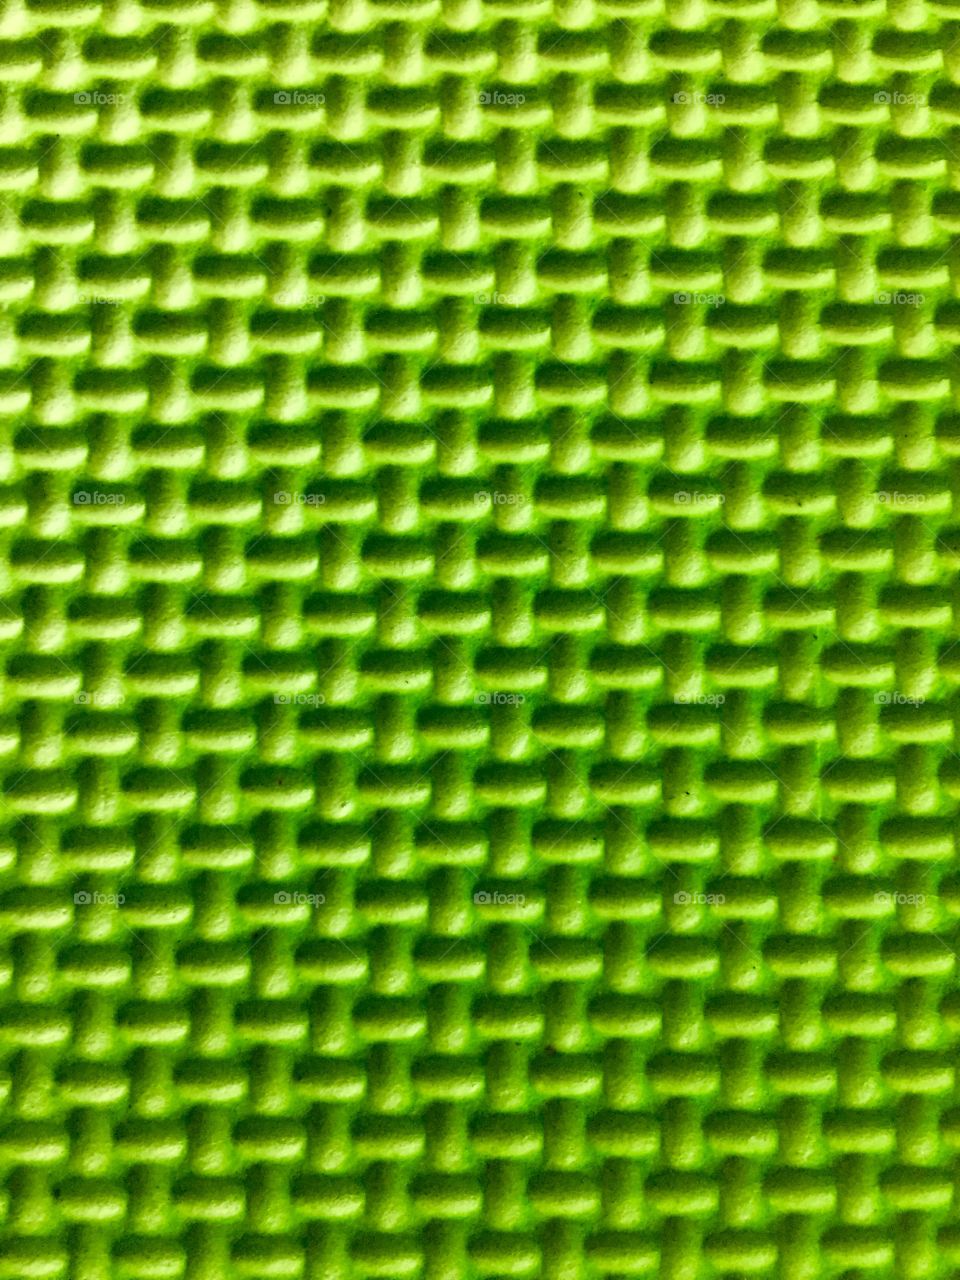 Green Color Story - foam pad closeup 